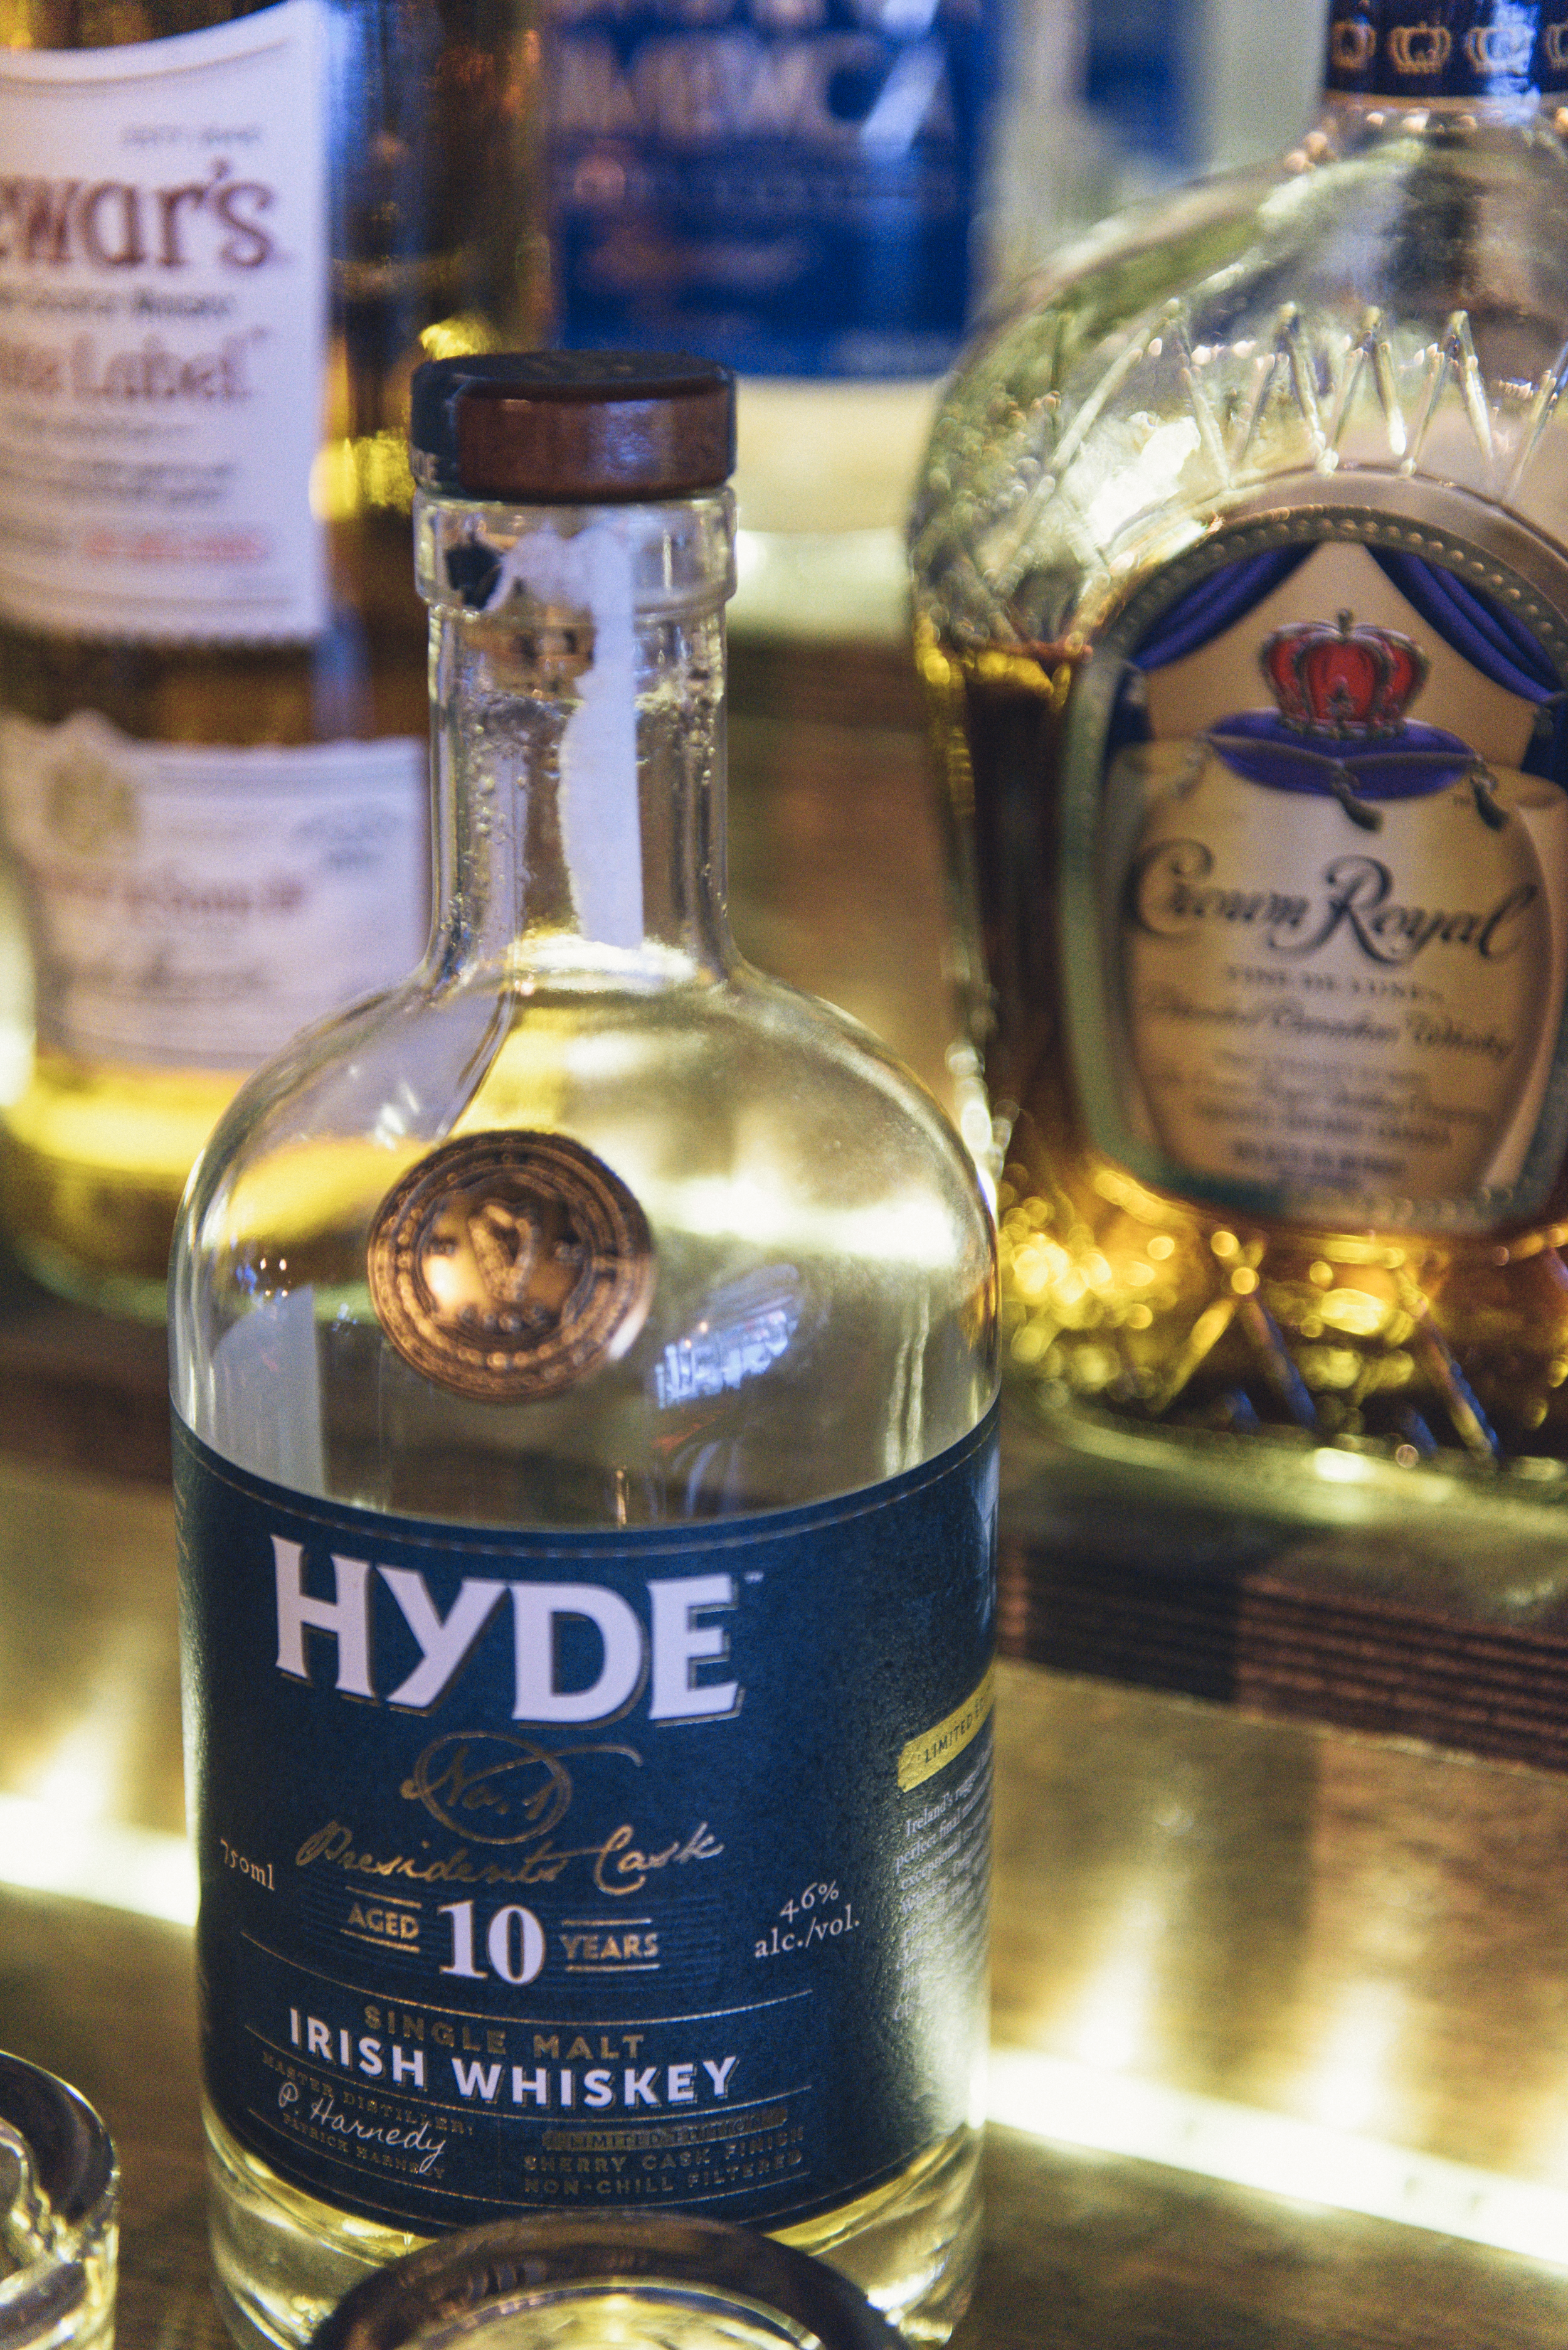 Close up of bottle of Hyde Irish Whiskey